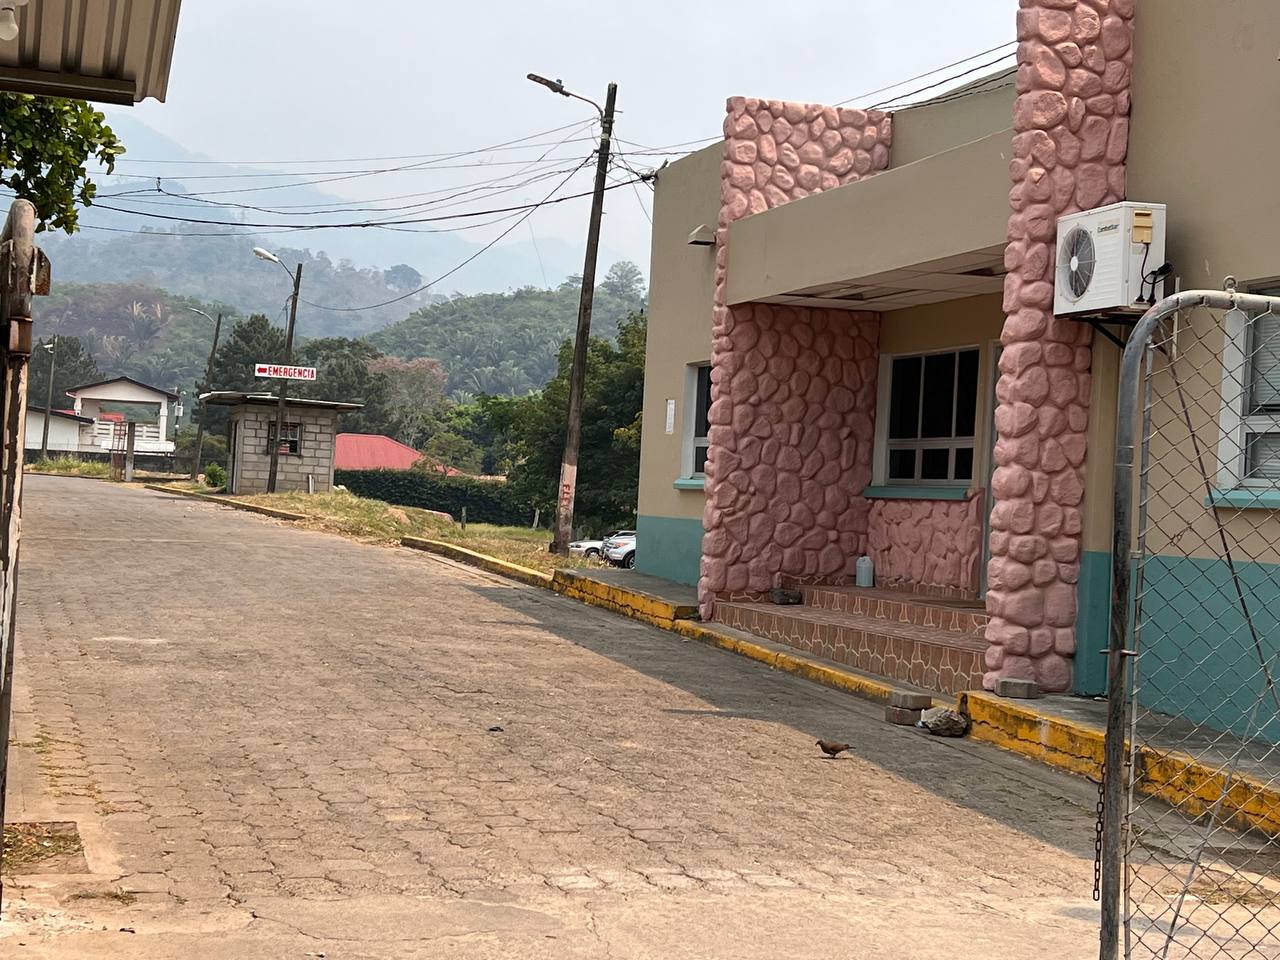 Edificio administrativo del Hospital El Progreso, Yoro, mismo que estuvo tomado durante 33 días por un grupo campesino. Foto CC / Leonardo Aguilar